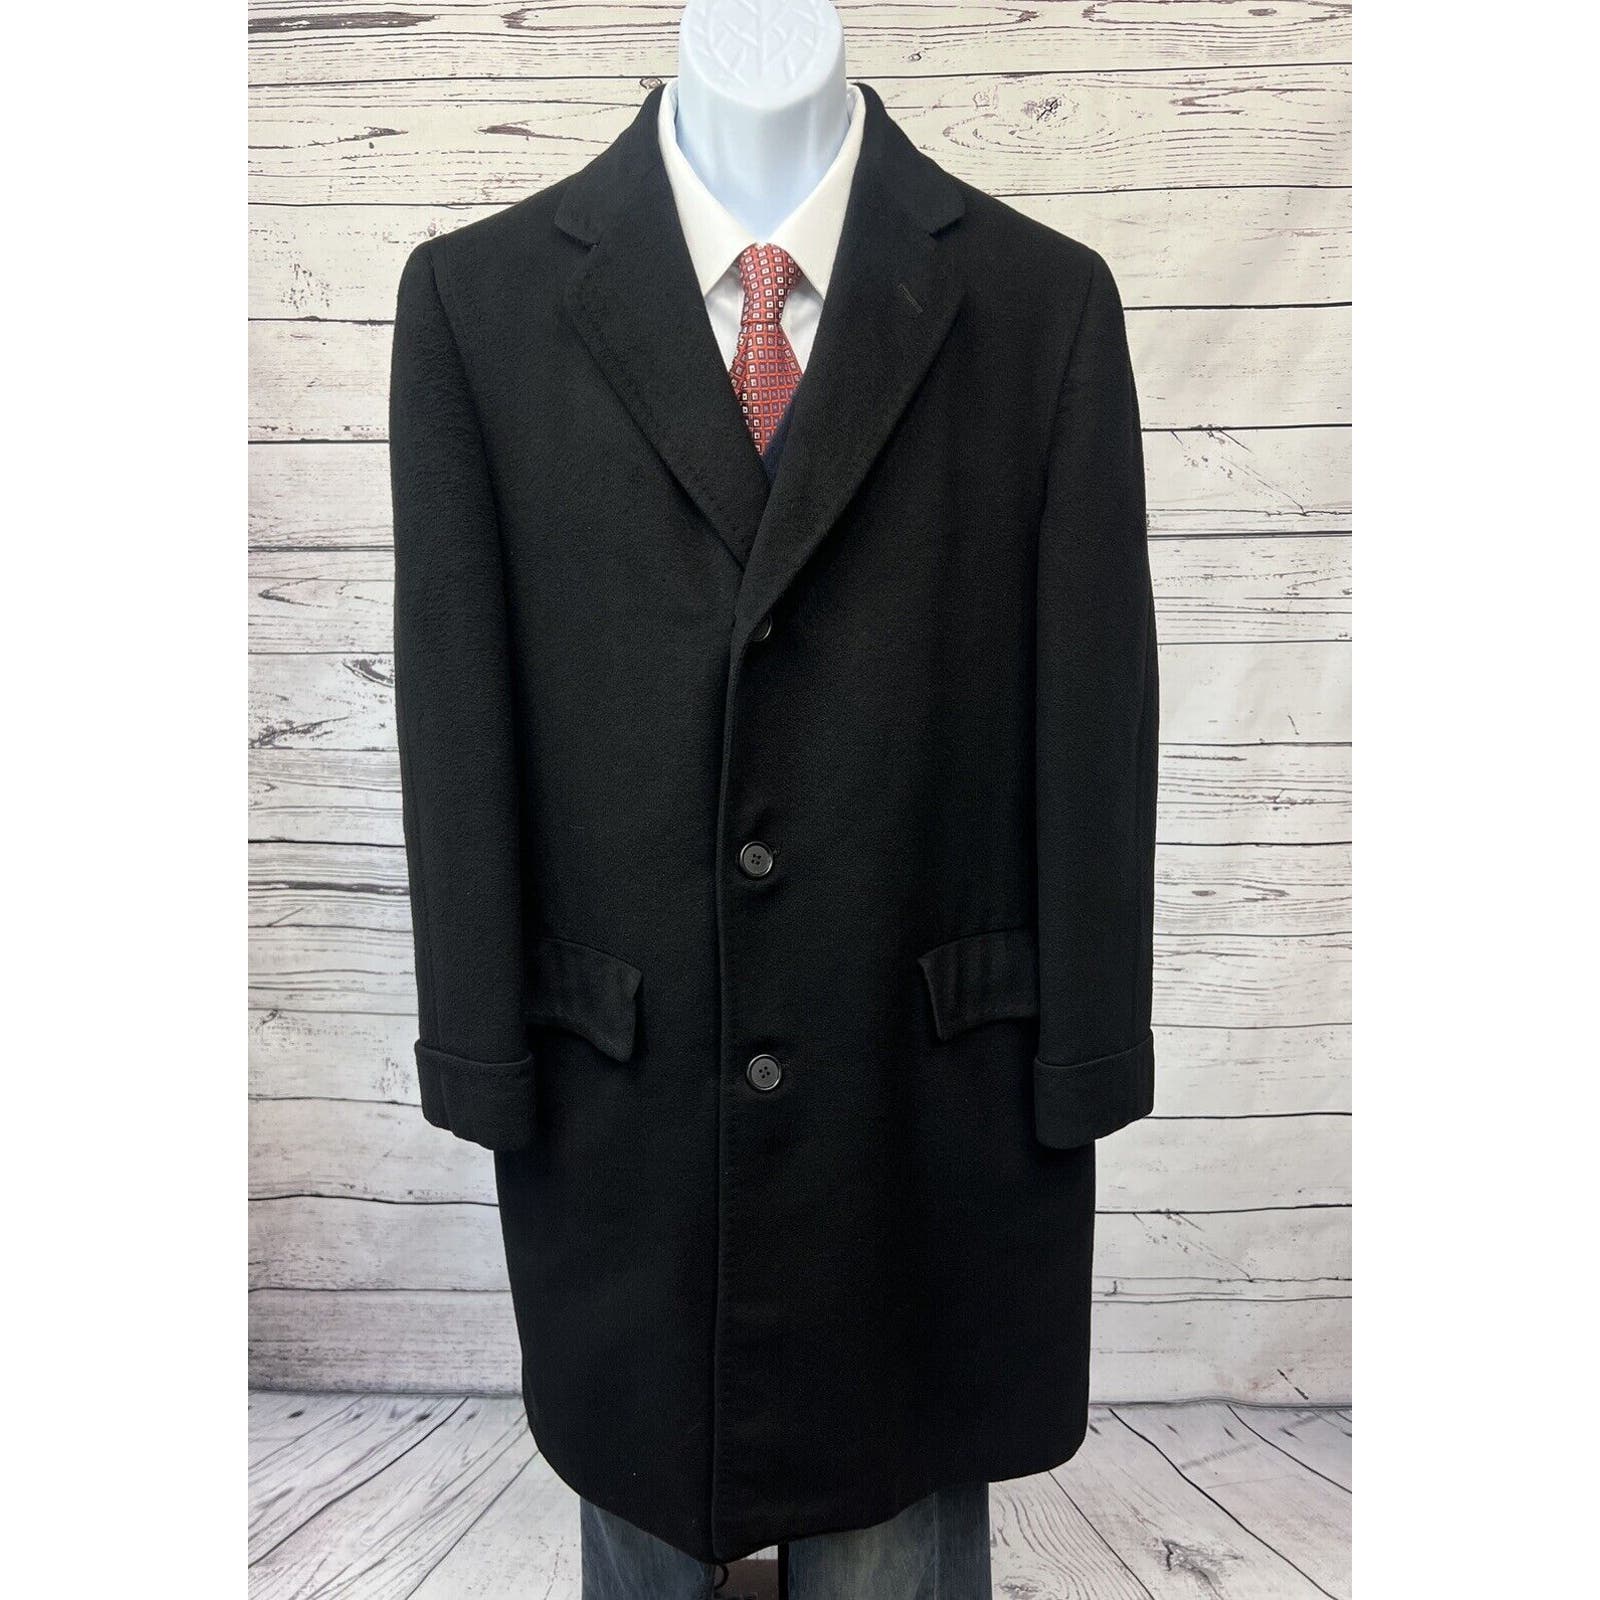 Vintage Dhalishan Overcoat 100% Cashmere Coat Men’s Large Black 1970